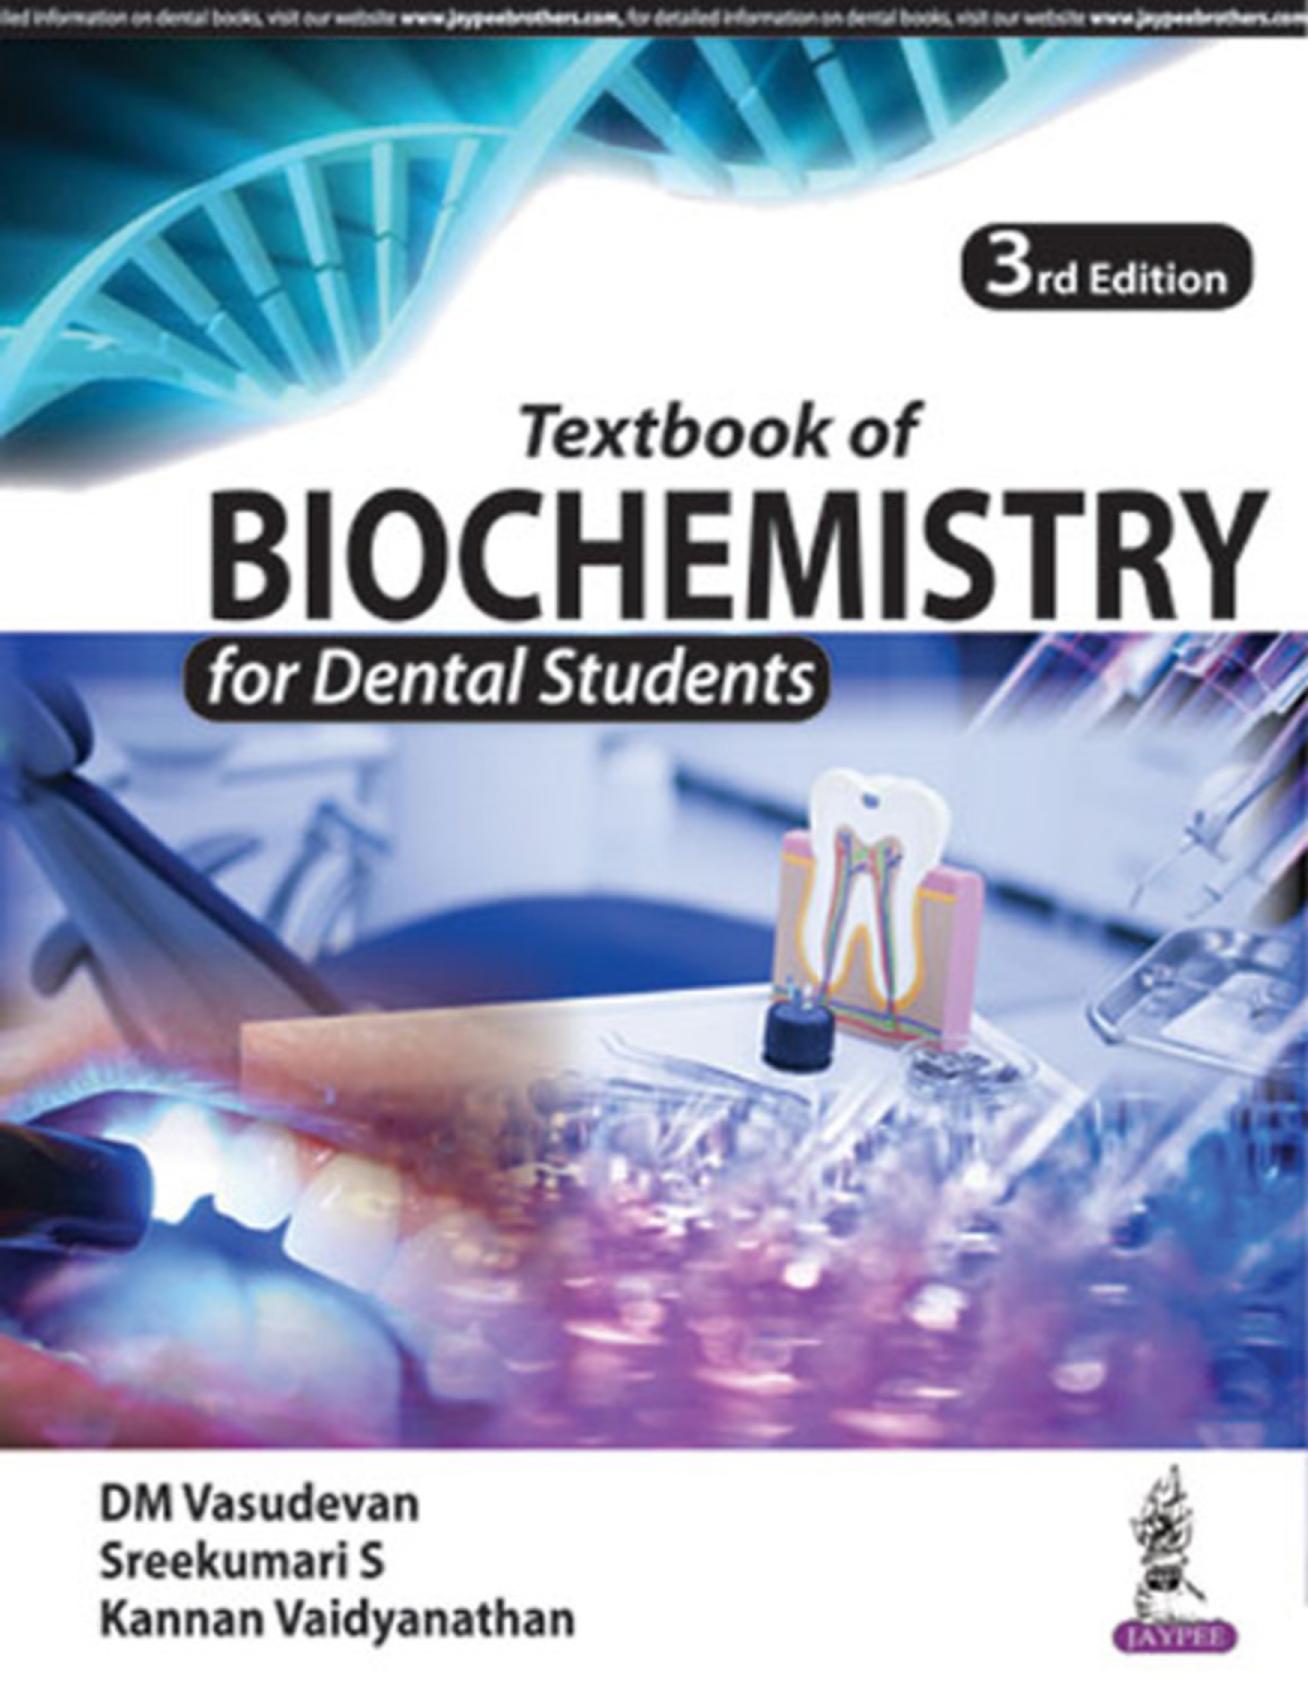 Textbook of Biochemistry for Dental Students - D. M. Vasudevan, Sreekumari S., Kannan Vaidyanathan - 3rd Edition (2017) 289 pp., ISBN: 978-9352701148